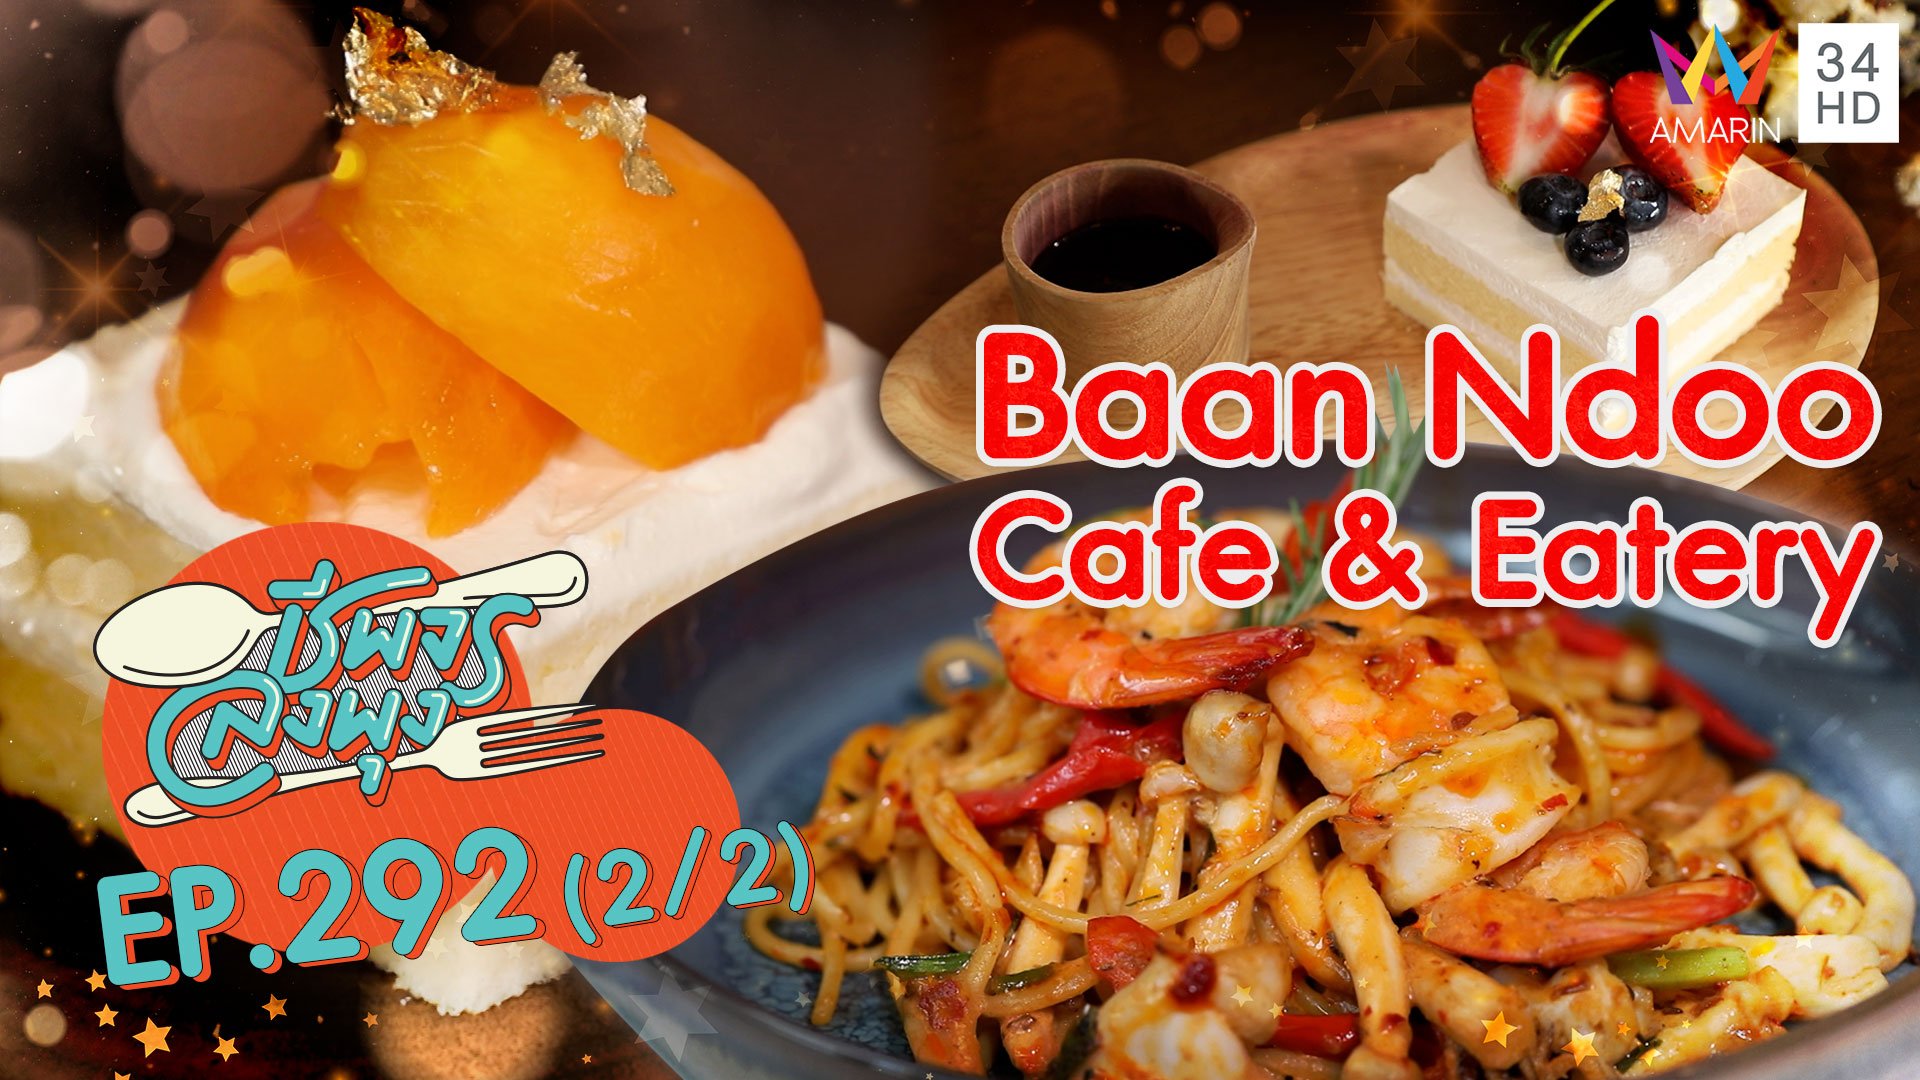 ครบเครื่องเรื่องคาวหวาน @ ร้าน Baan Ndoo Cafe & Eatery | ชีพจรลงพุง | 10 เม.ย. 64 (2/2) | AMARIN TVHD34